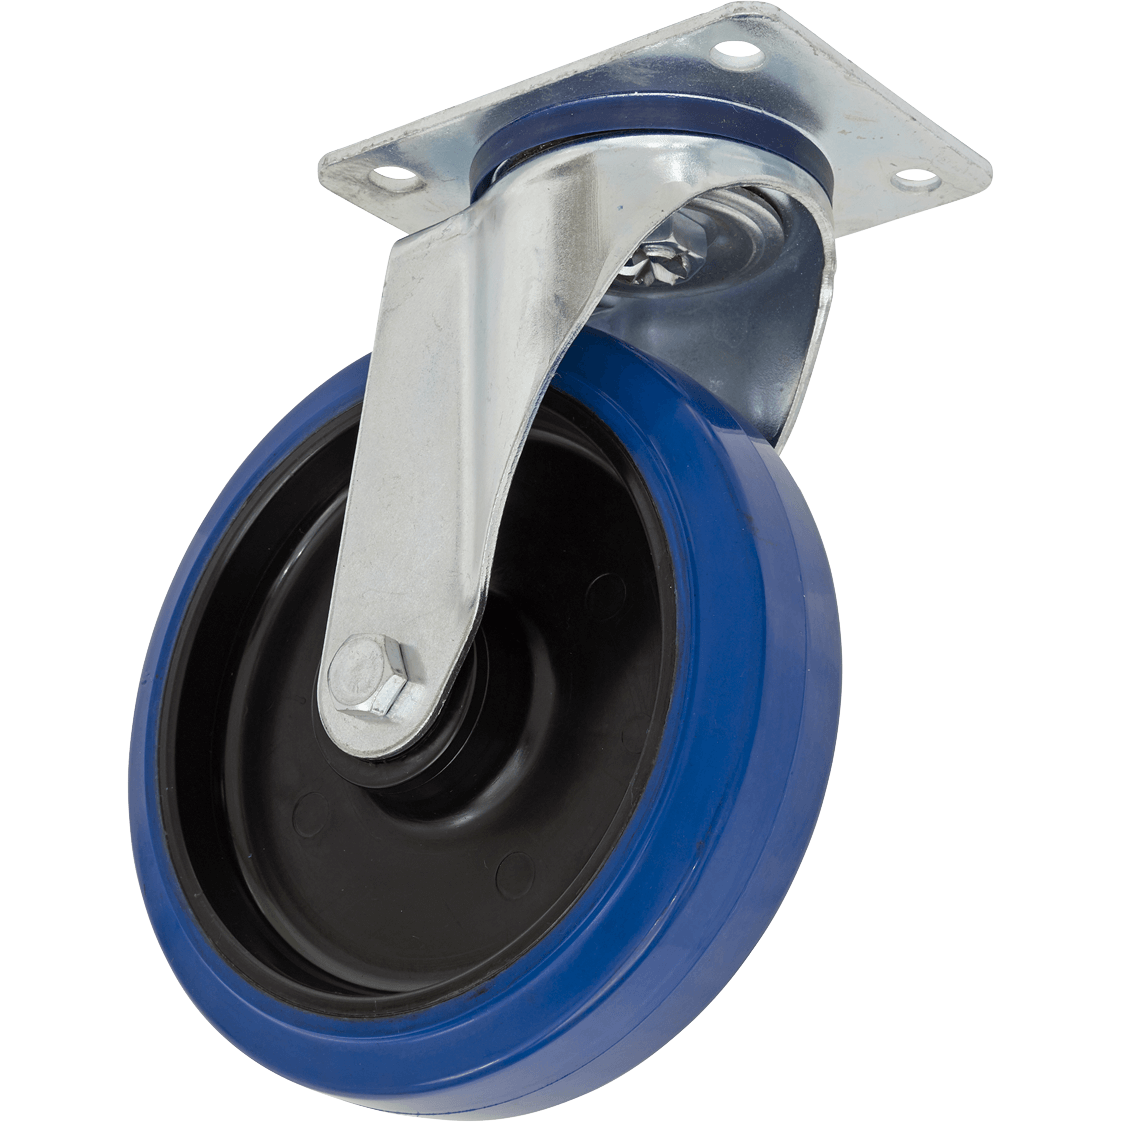 Sealey Heavy-Duty Blue Elastic Rubber Swivel Castor Wheel 125mm